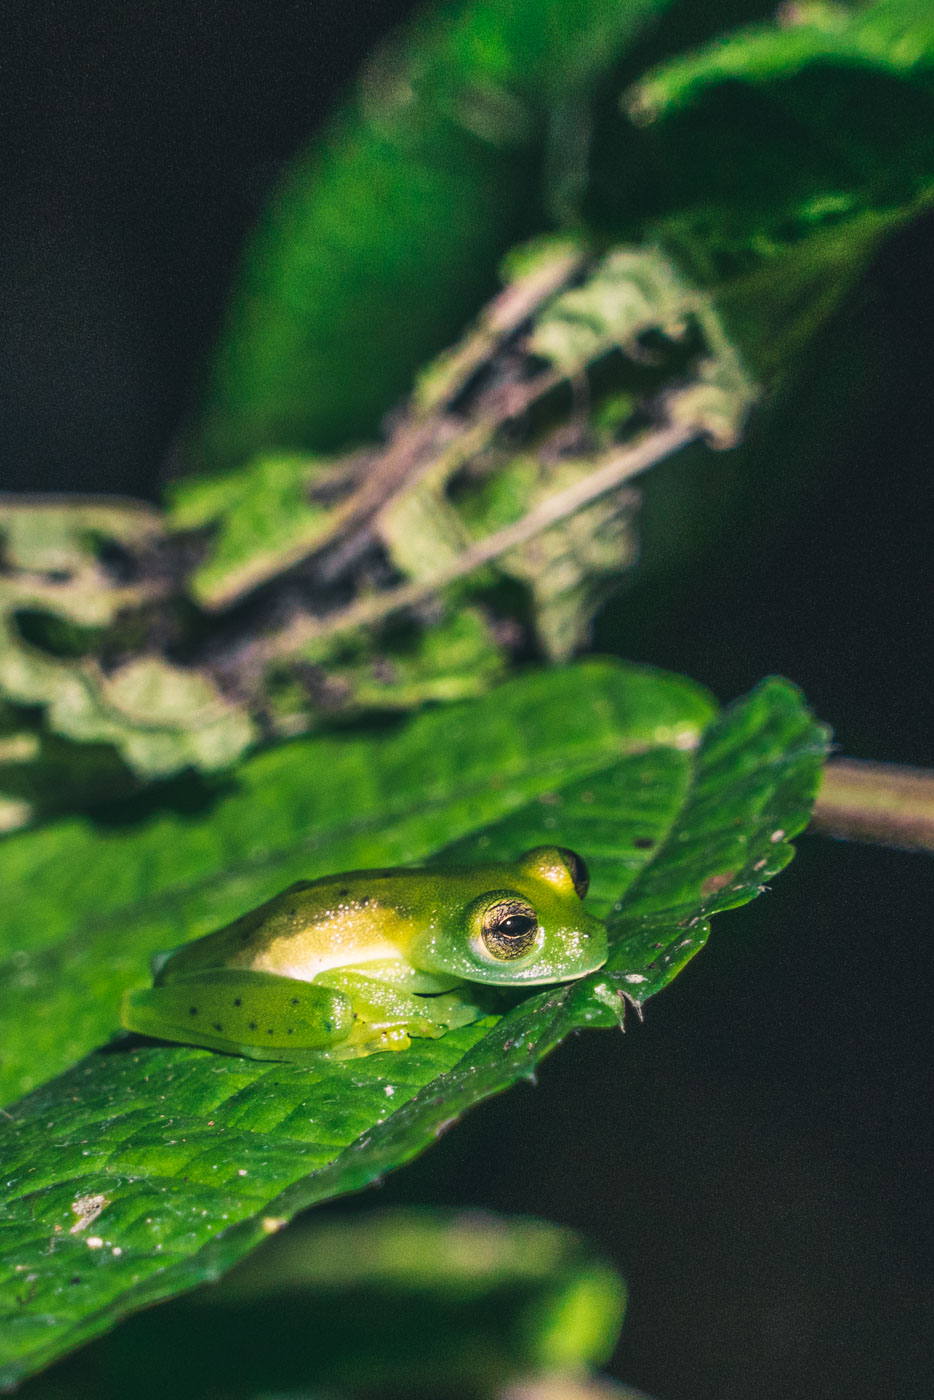 哥斯达黎加希门尼斯港:科尔科瓦多公园里的青蛙